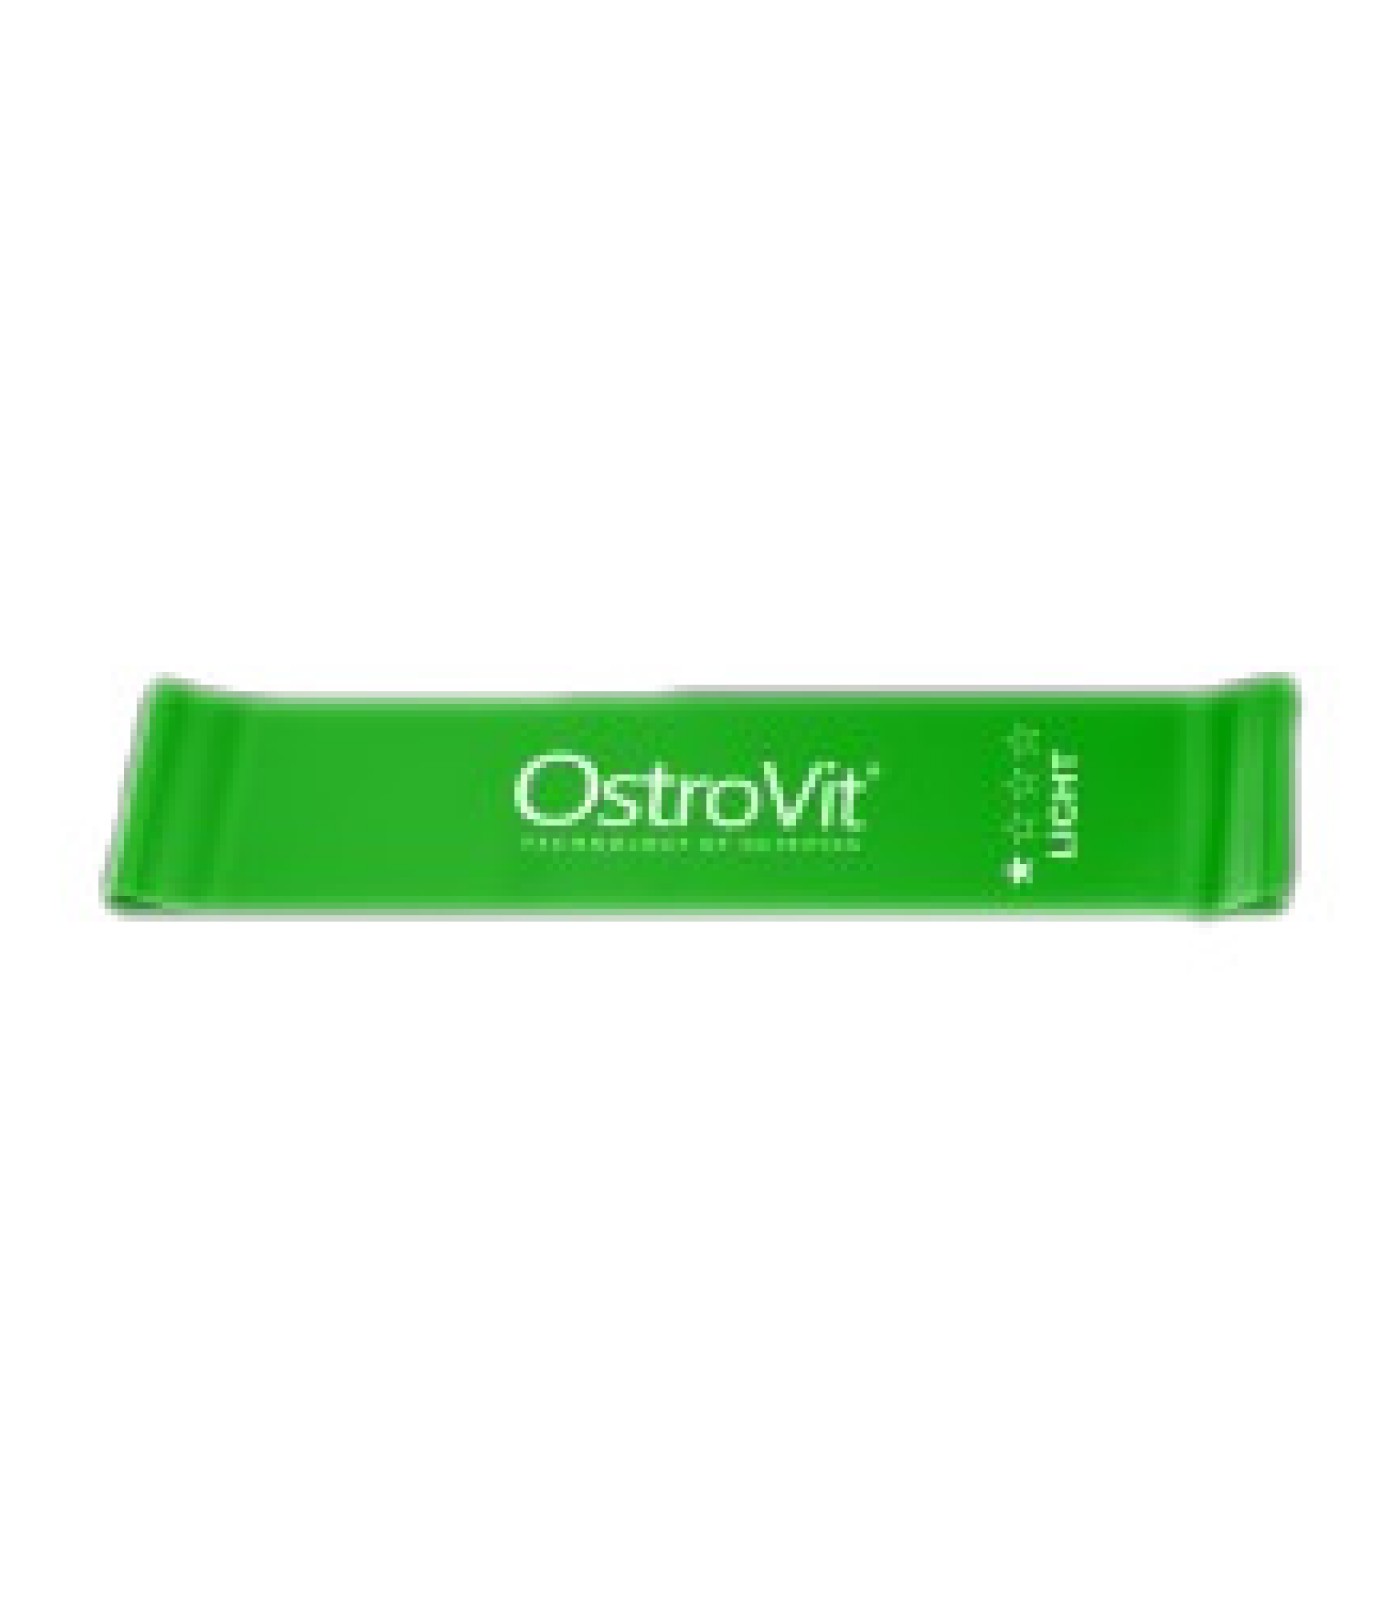 OstroVit - Непрекъснат тренировъчен ластик Light / Зелен